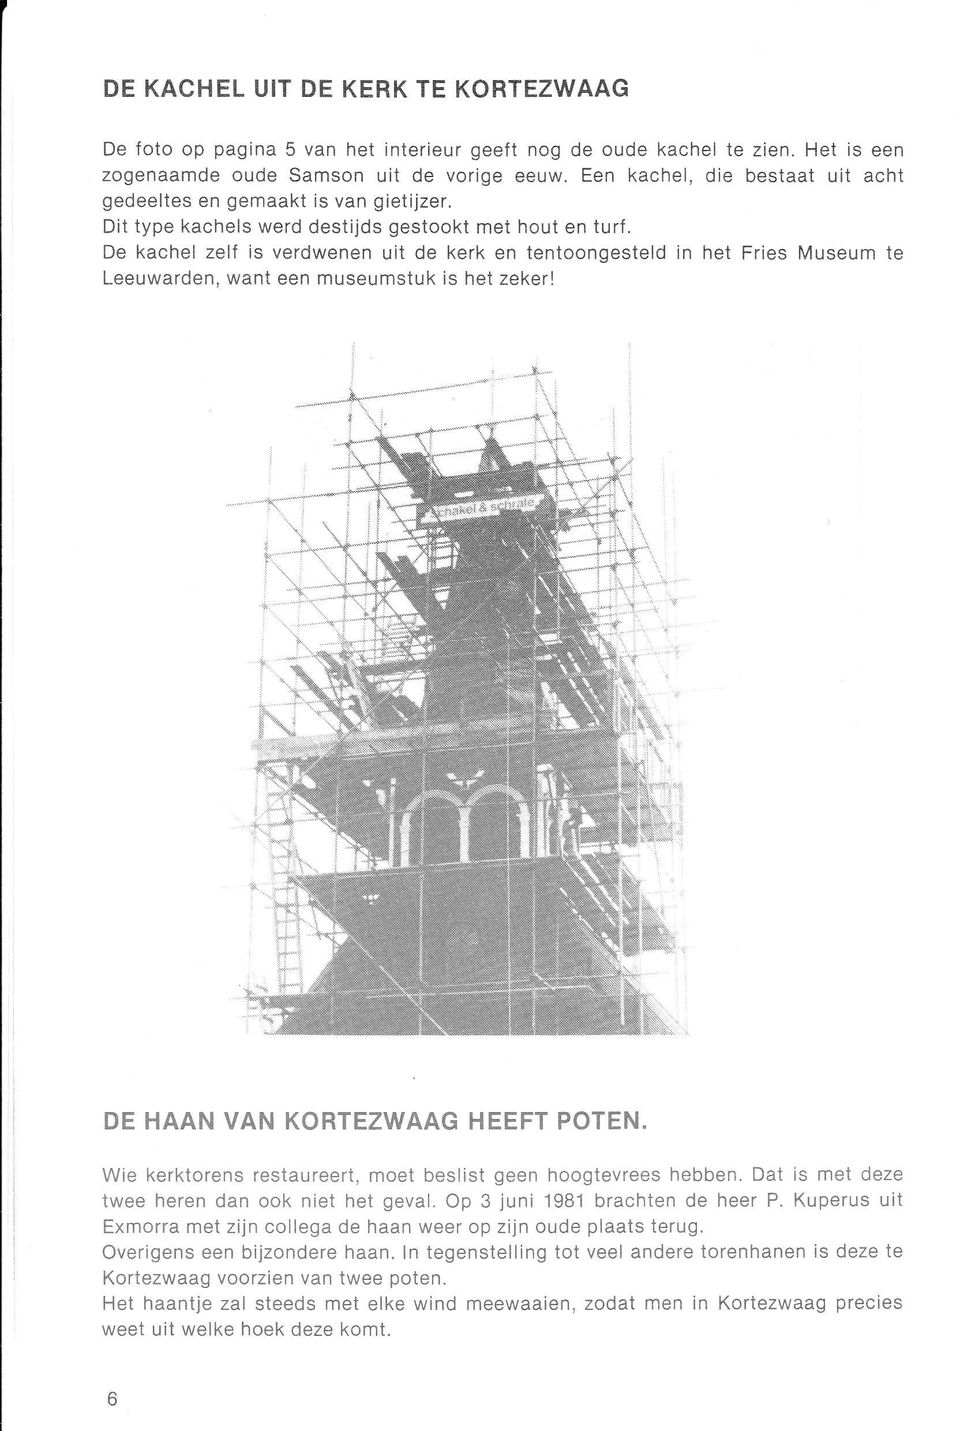 De kachel zelí is verdwenen uit de kerk en tentoongesteld in het Fries Museum te Leeuwarden, want een museumstuk is het zeker! DE HAAN VAN KORTEZWAAG HEEFT POTEN.